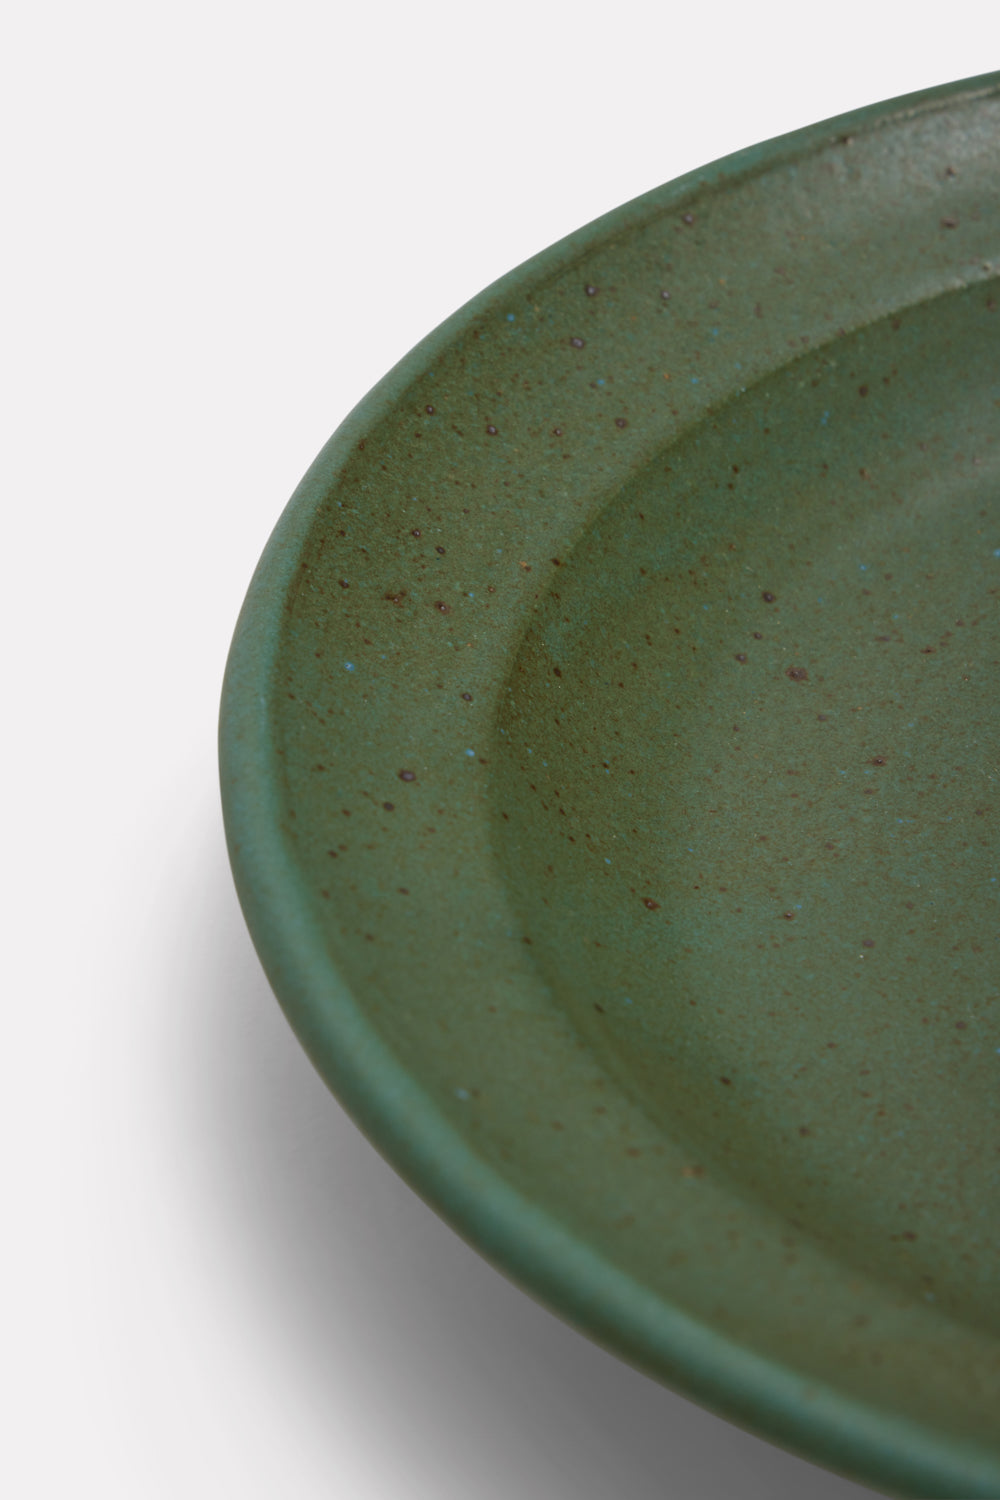 Hand-Thrown Ceramic Bowls (set of four)